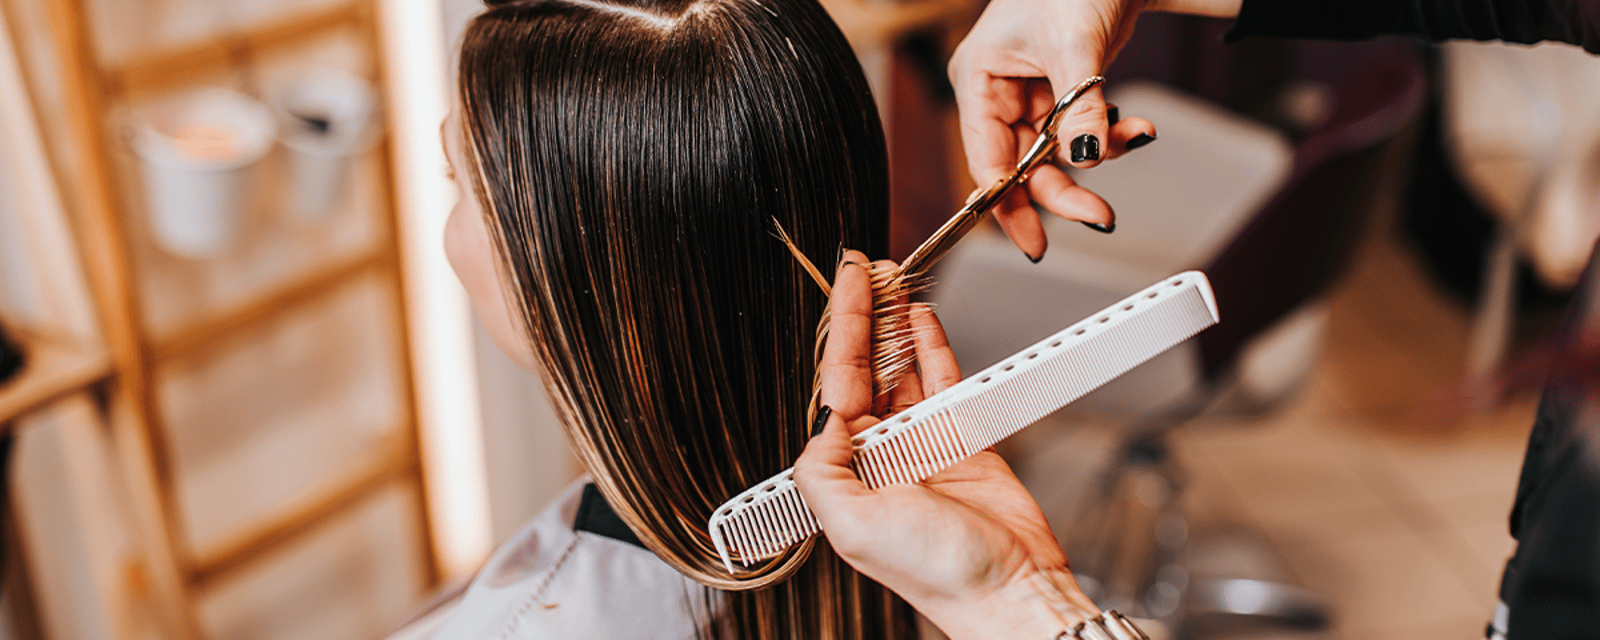 Aller chez le coiffeur coûte plus cher que jamais au Québec